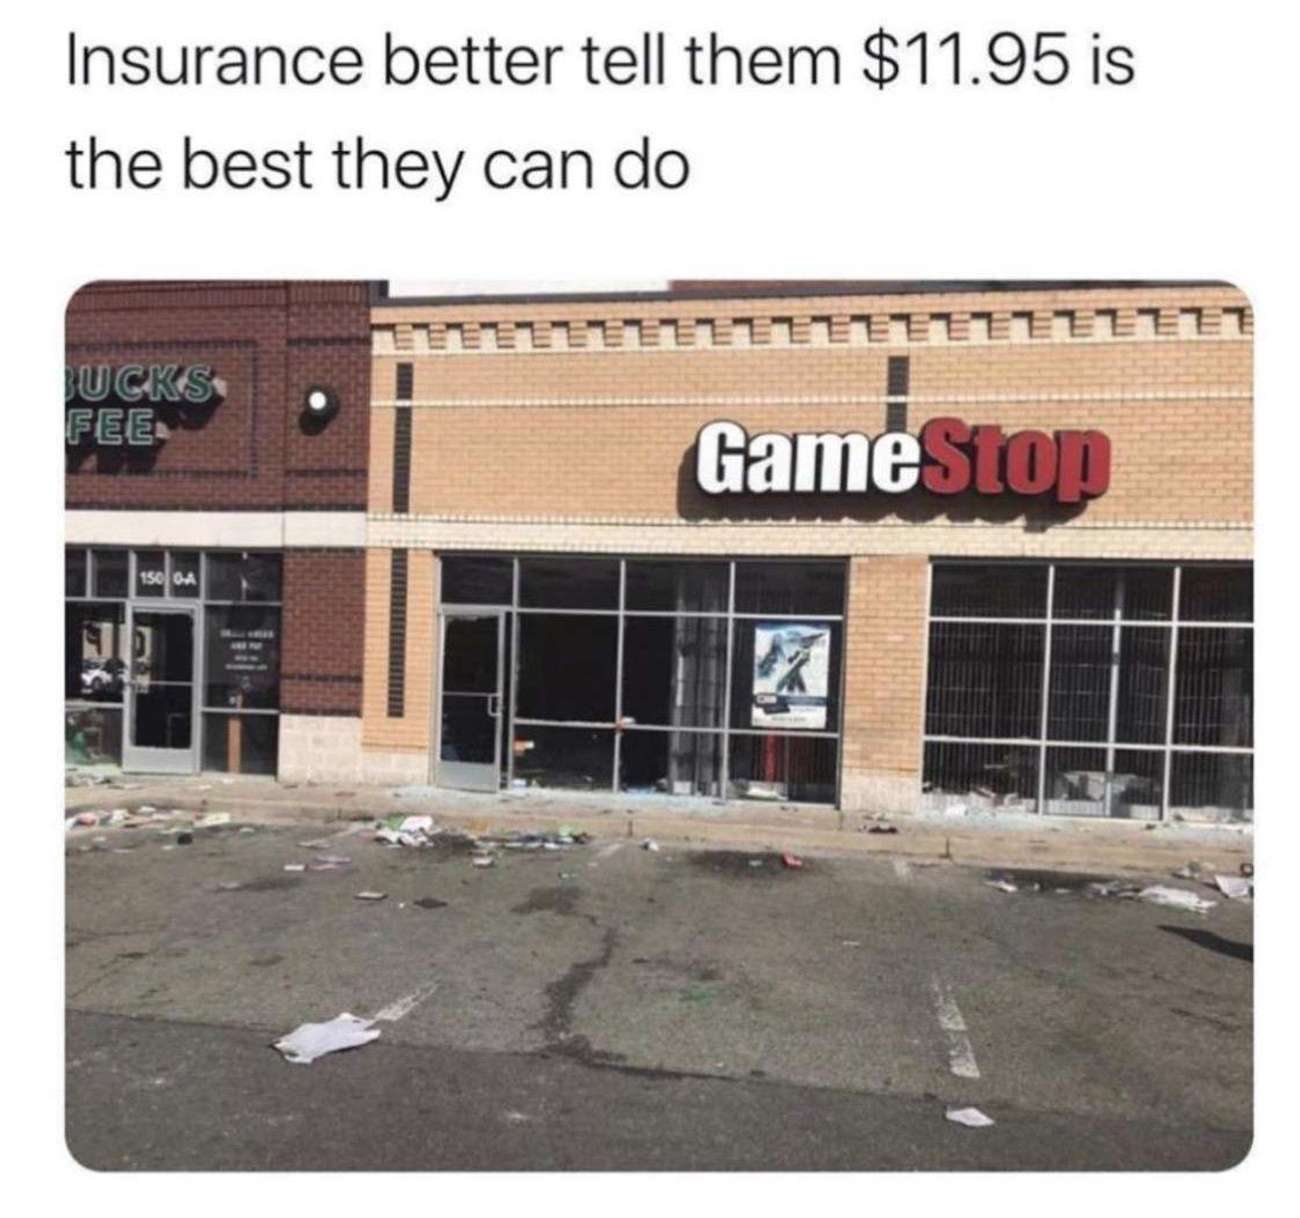 facade - Insurance better tell them $11.95 is the best they can do Eeeeeeeeeeeeeeeee Jucks Fee. GameStop 150 Ga